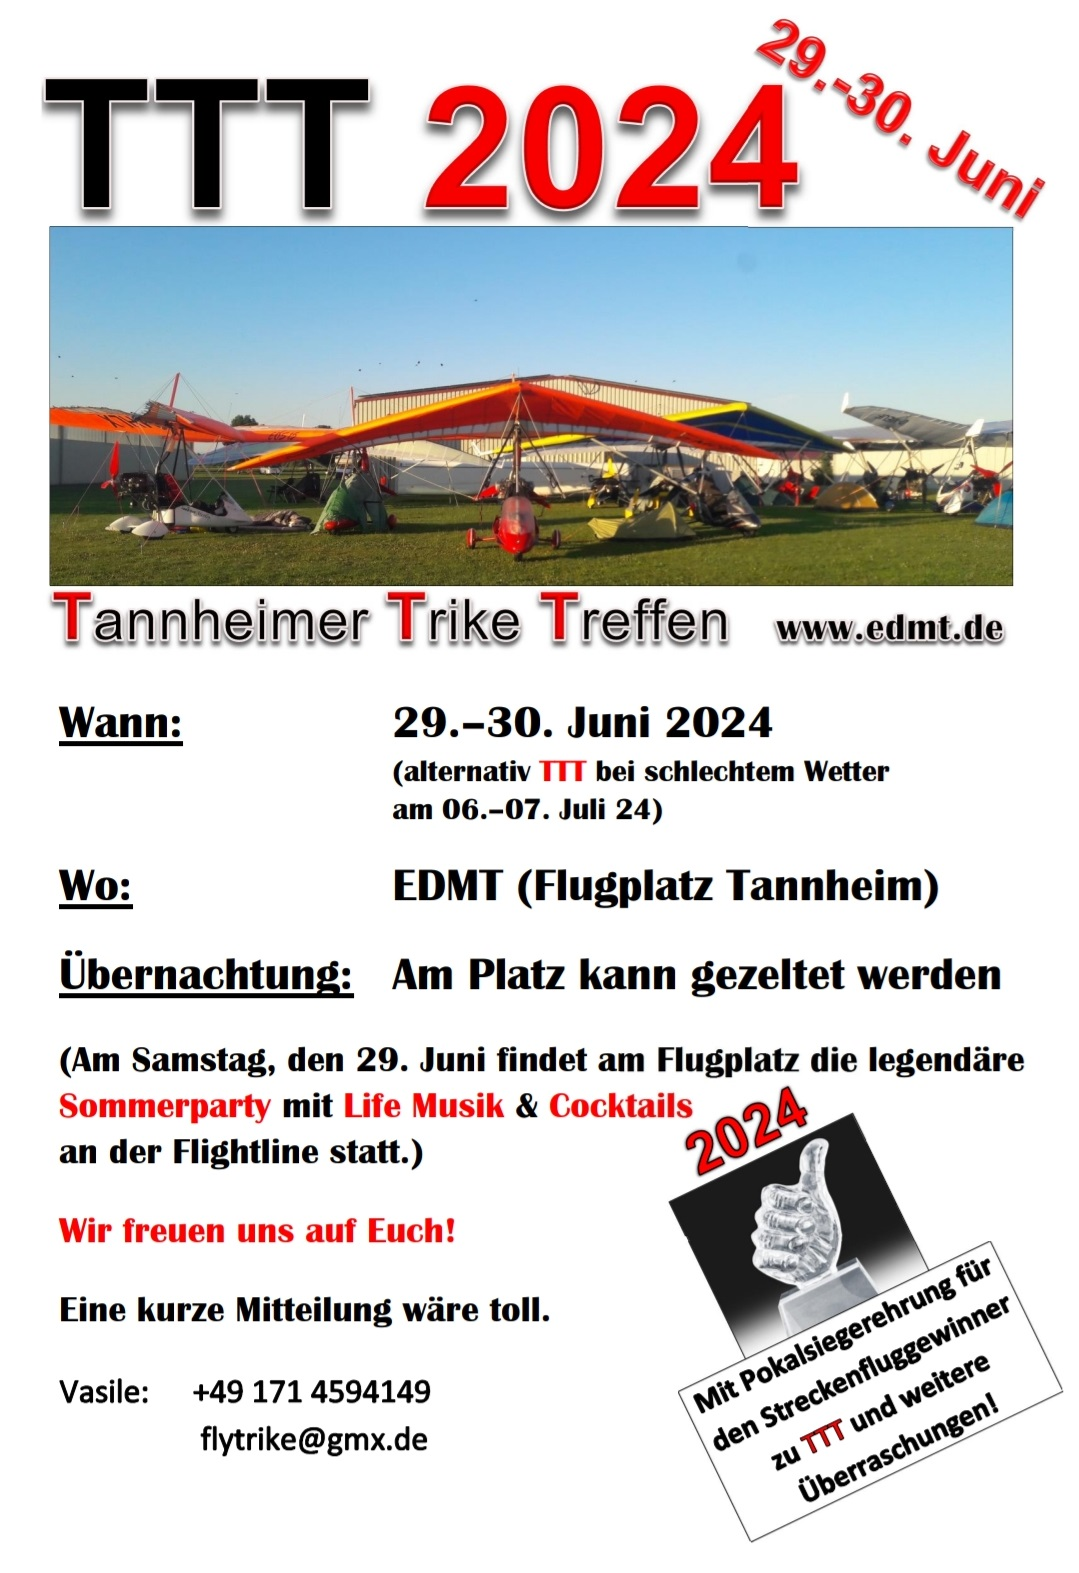 Triker-Treffen in Tannheim am 29./30. Juni 2024